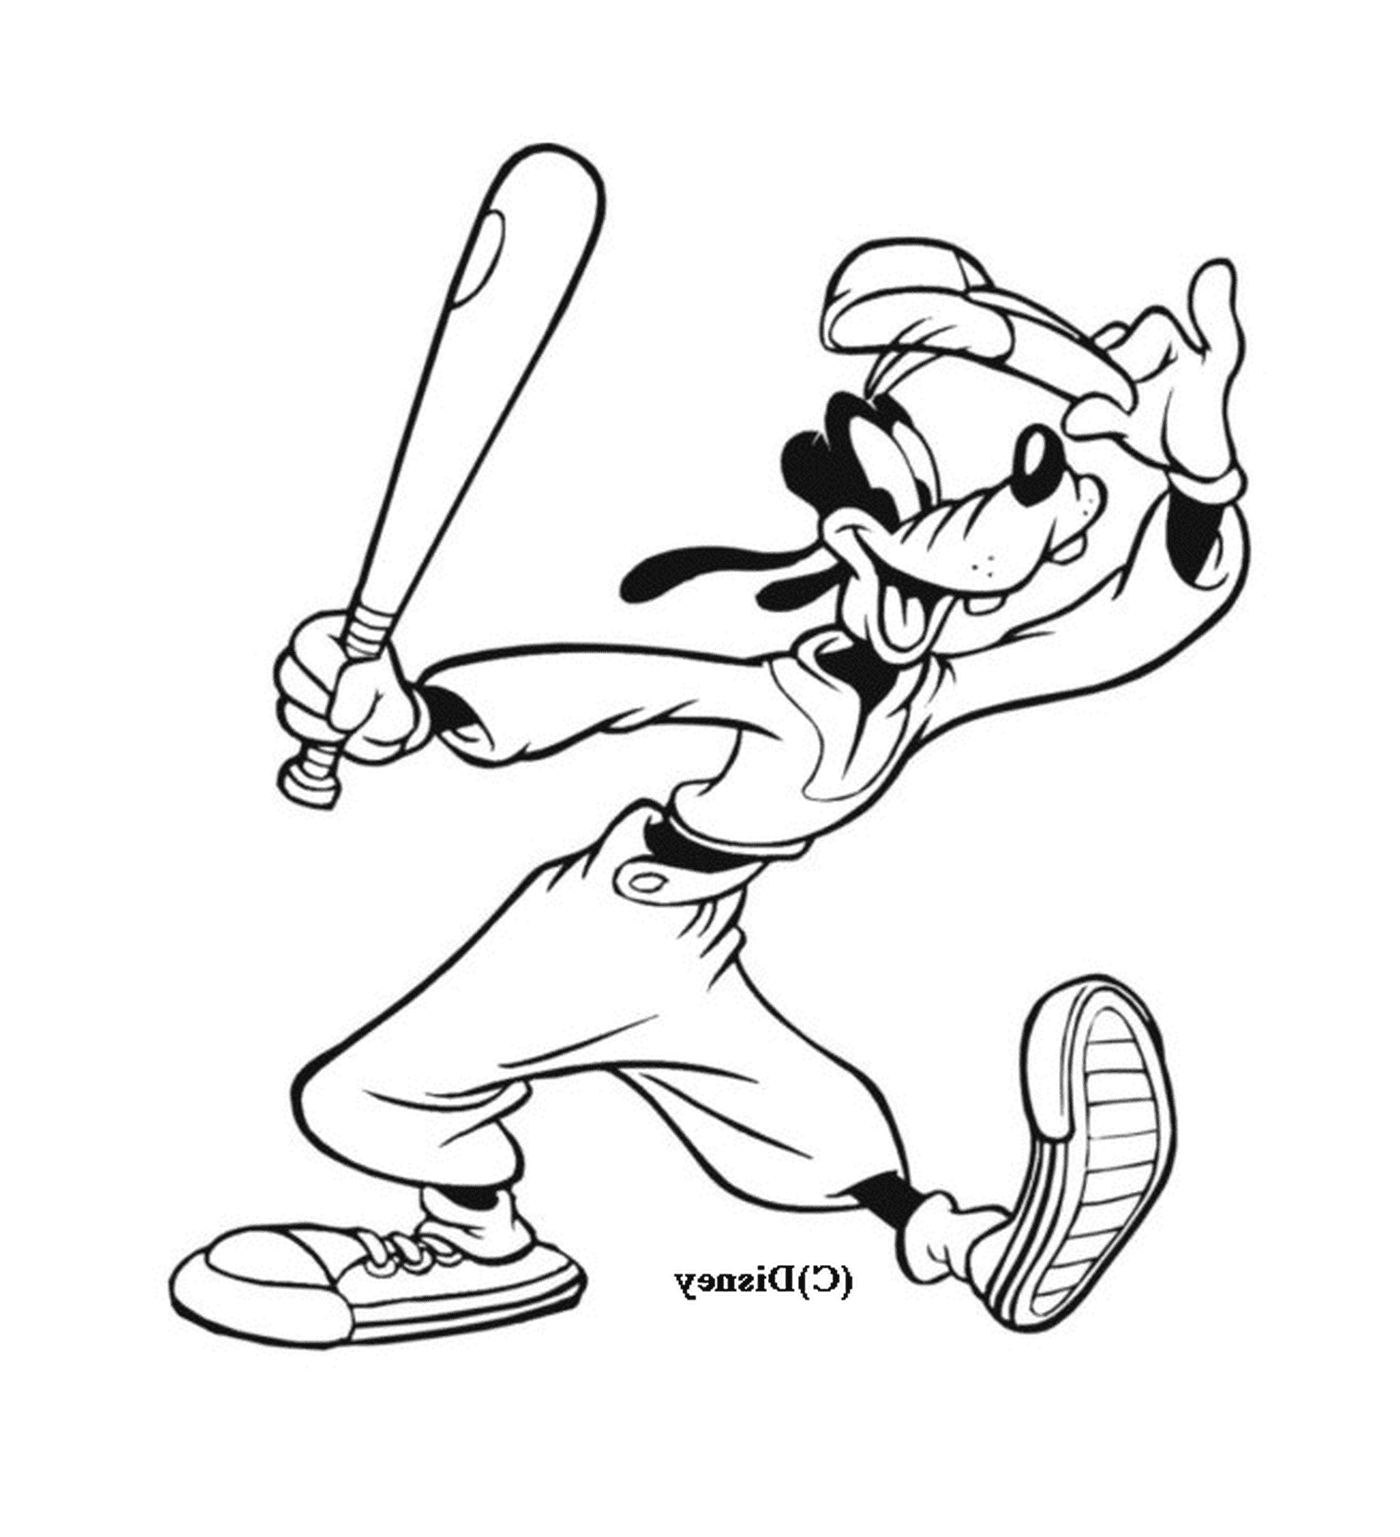  Динго играет в бейсбол с битой 